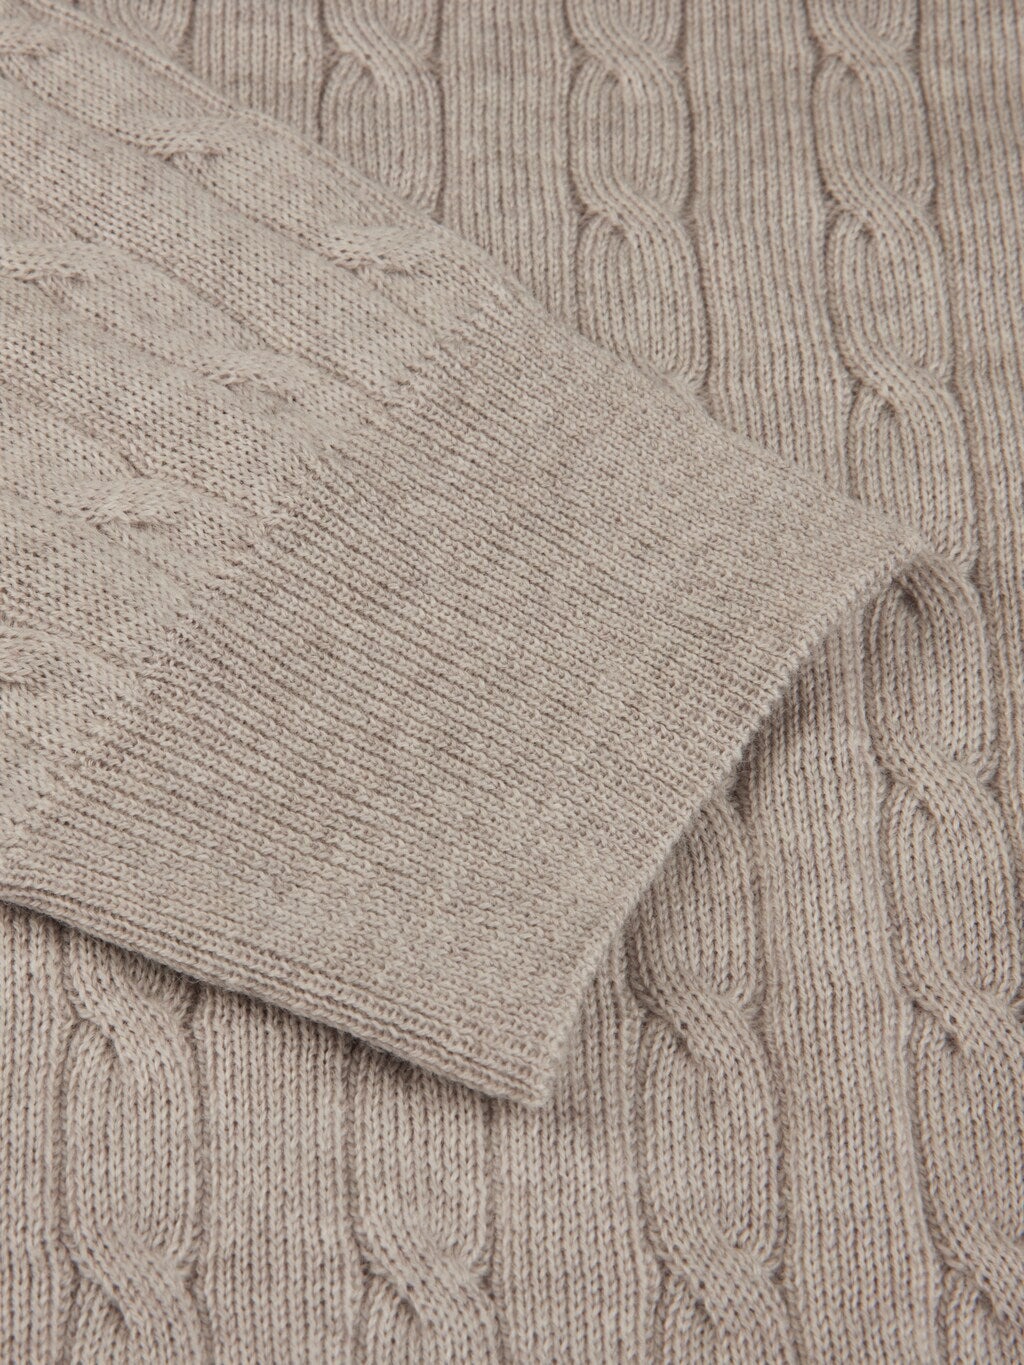 Sweater knitted half zip merino